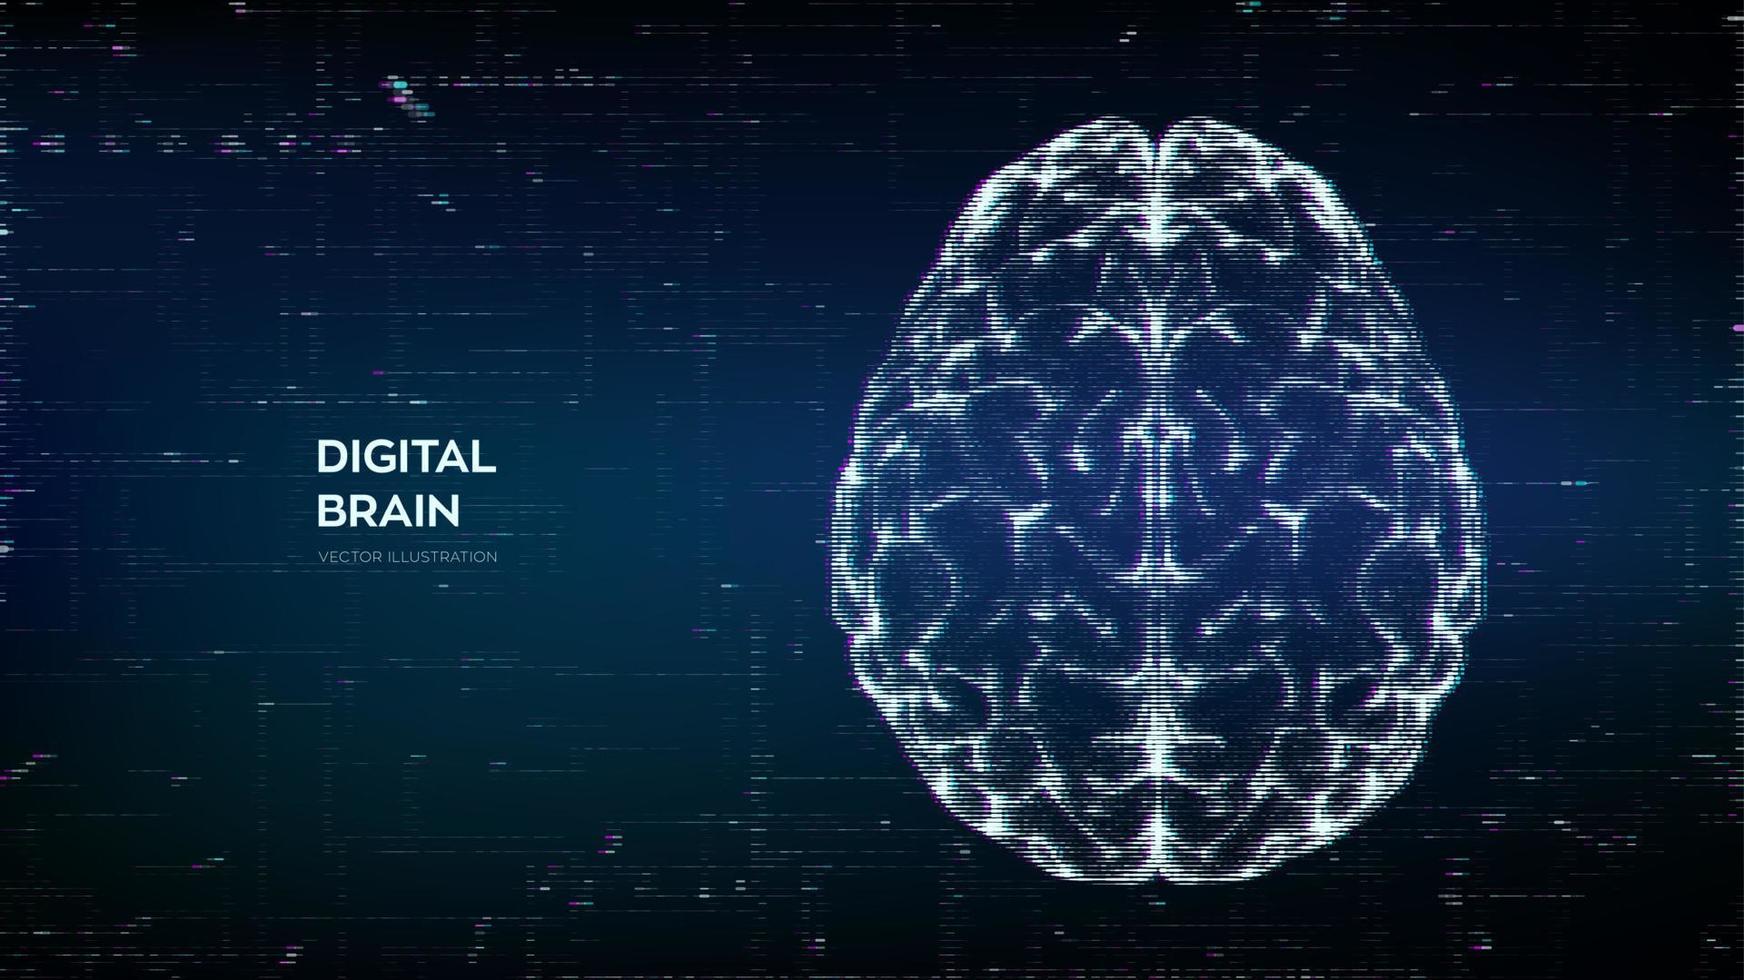 cérebro. cérebro humano digital abstrato em um estilo de falha distorcida. rede neural. teste iq, conceito de tecnologia de emulação virtual de inteligência artificial. brainstorm, pense em uma ideia. ilustração vetorial. vetor